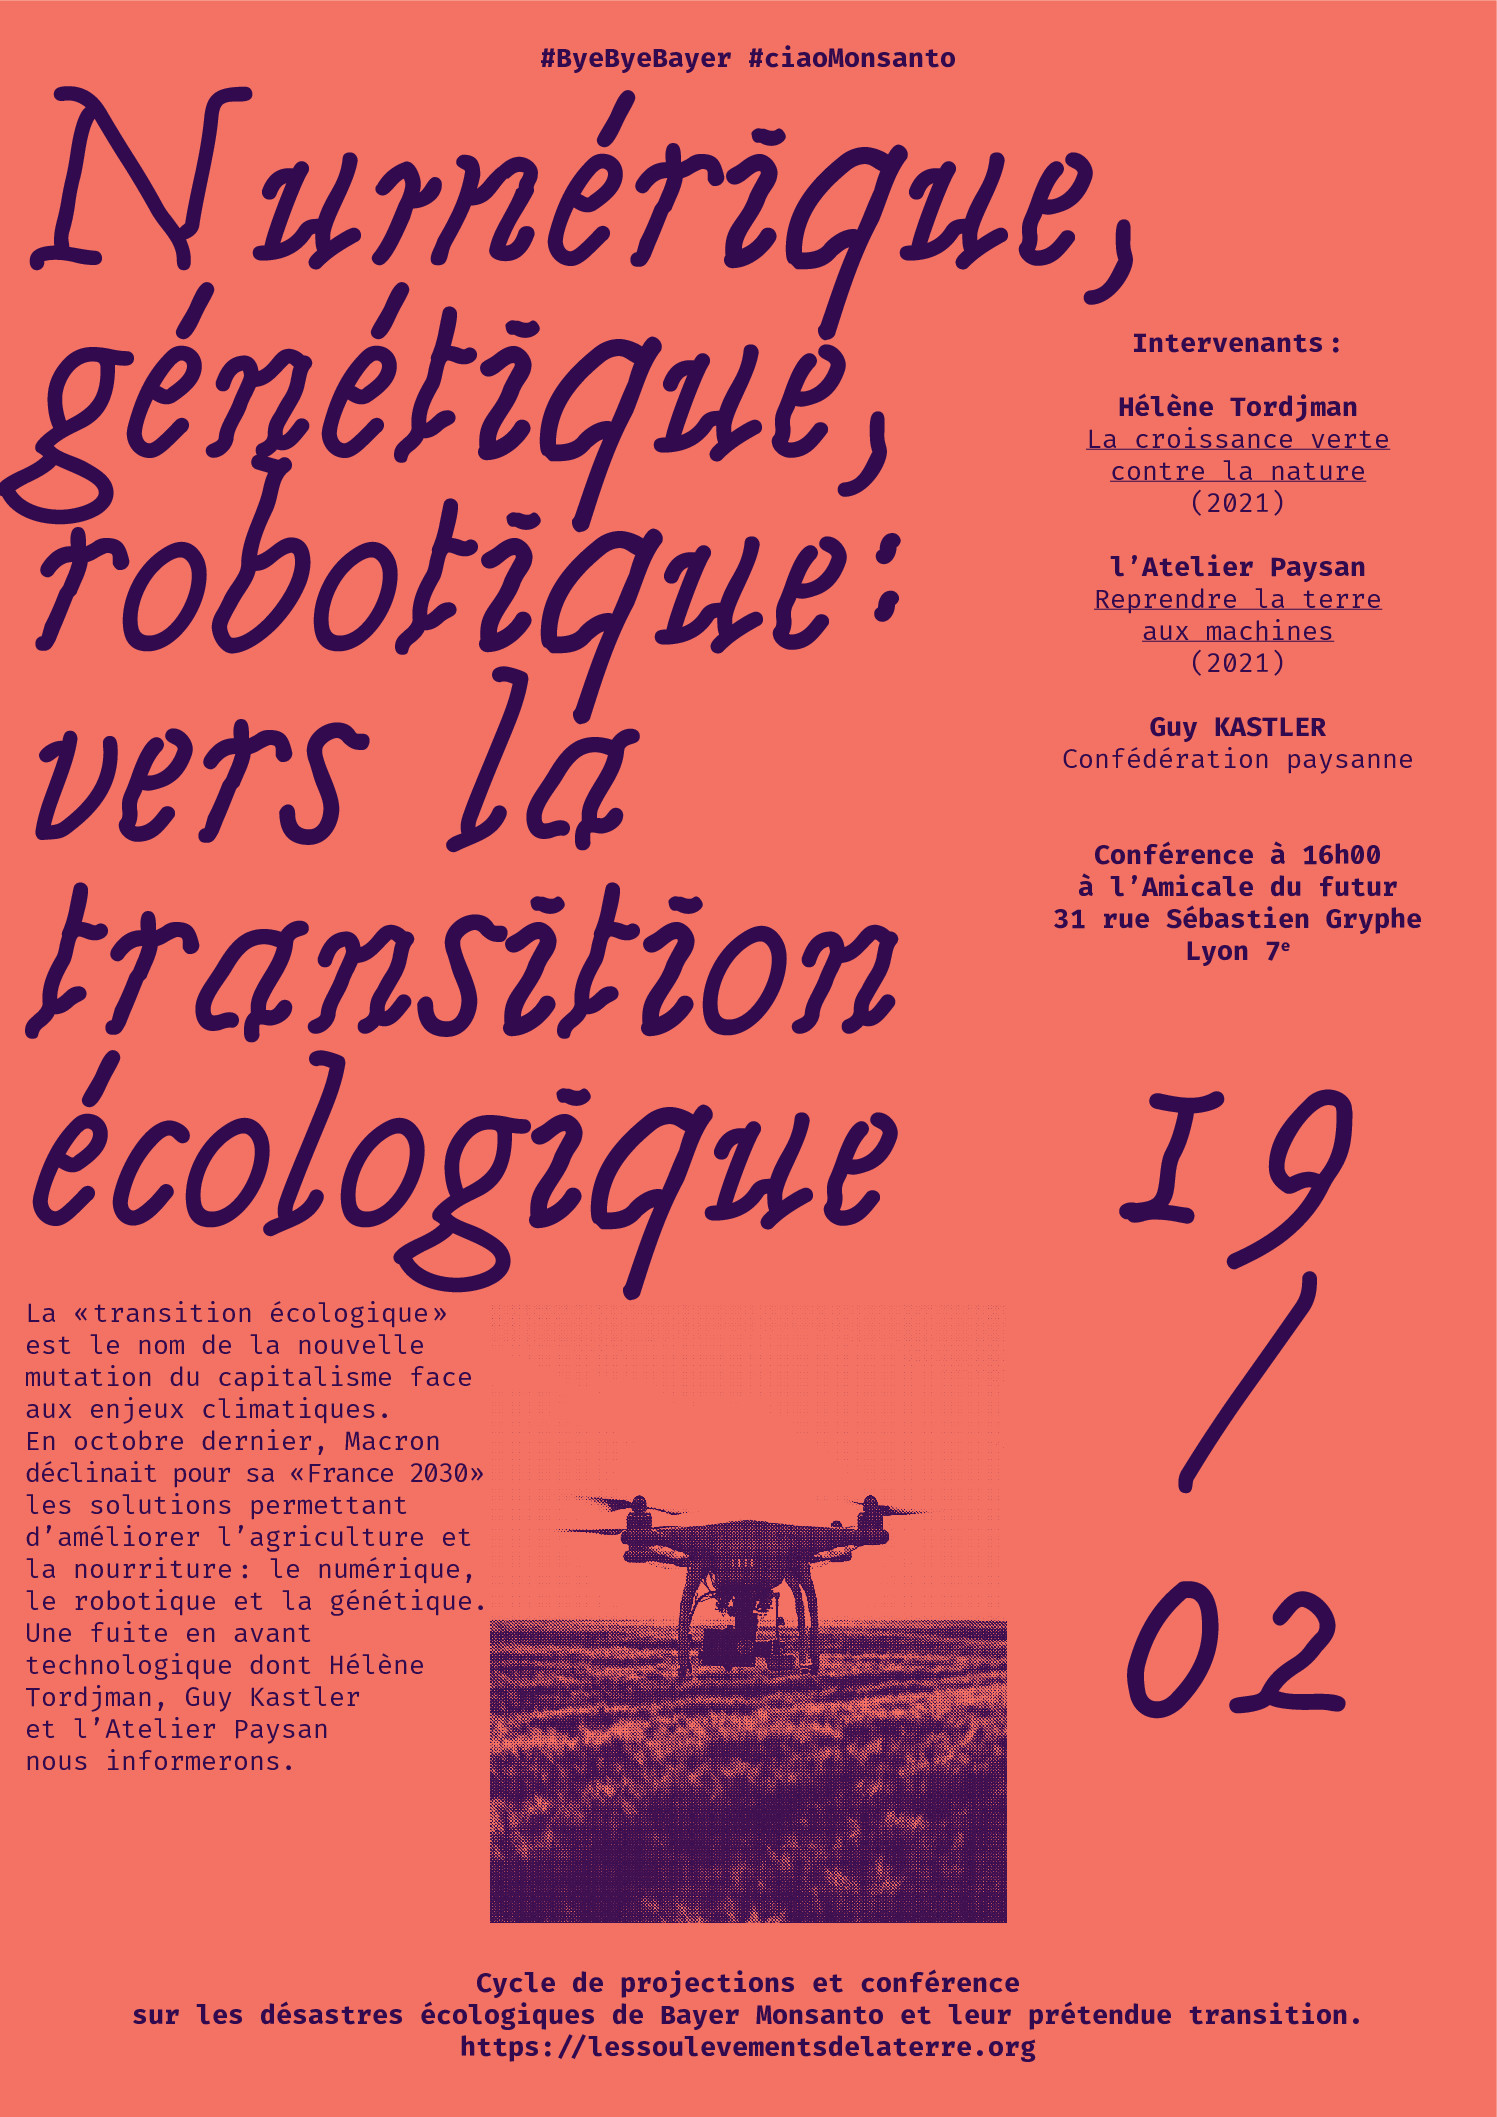 L'Amicale du Futur, 31 rue Sébastien Gryphe Lyon 7e — SAM 19/02 16h CONFERENCE NUMERIQUE, GENETIQUE, ROBOTIQUE : VERS LA TRANSITION ECOLOGIQUE?